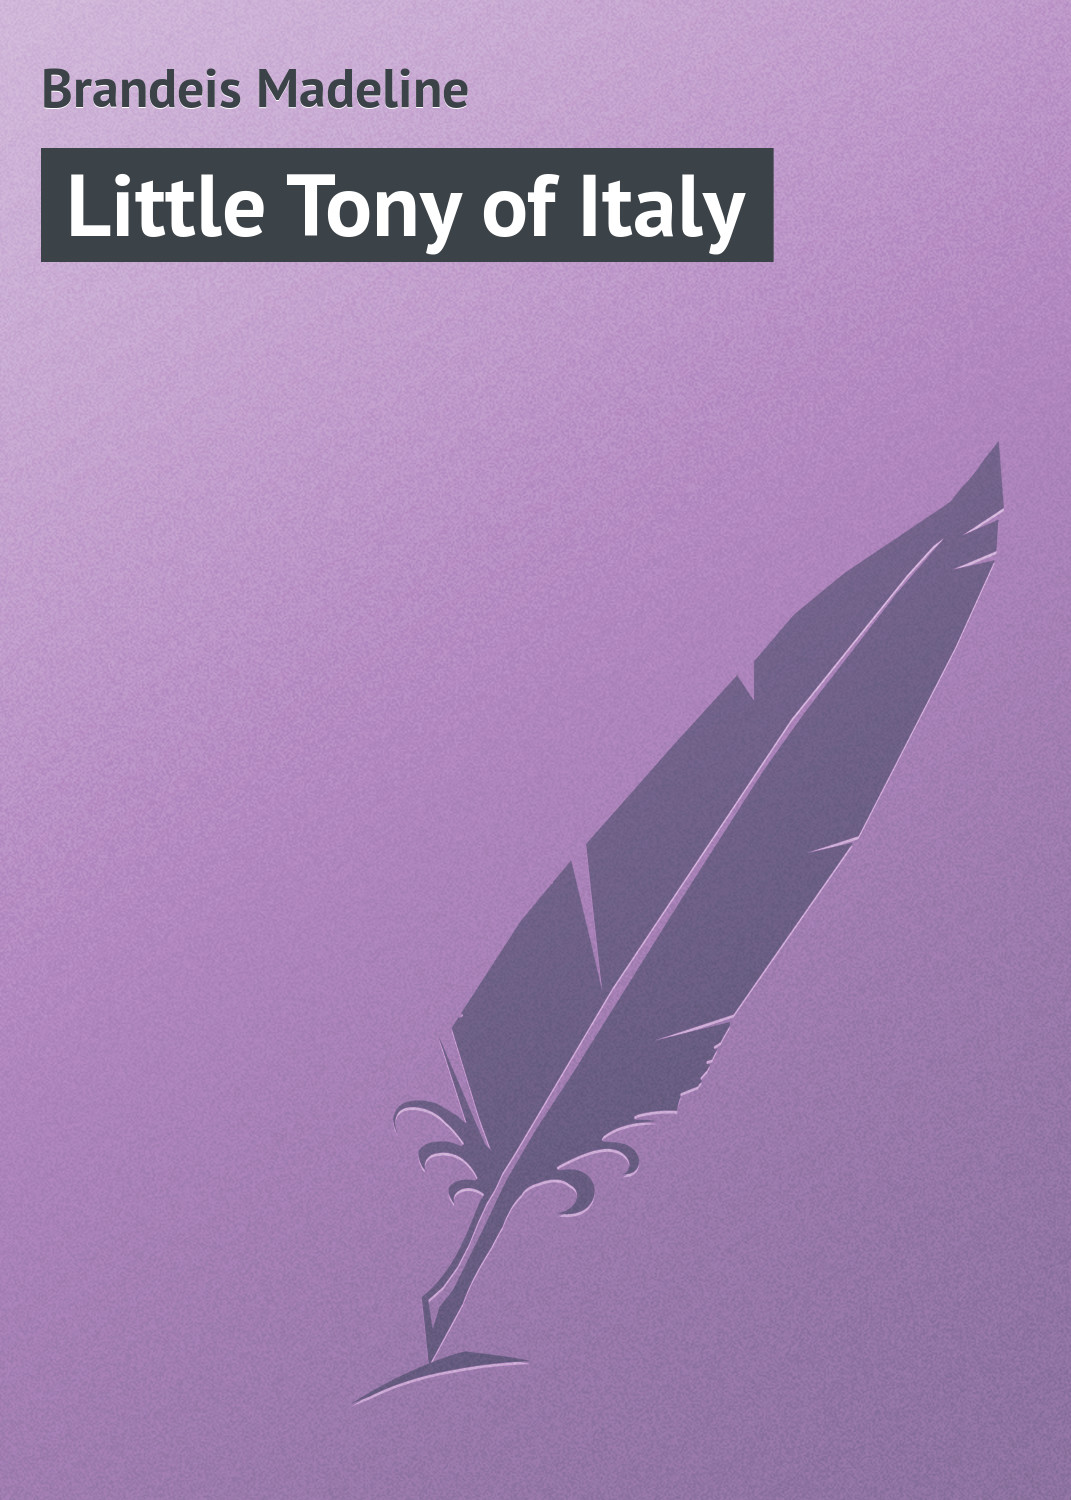 Книга Little Tony of Italy из серии , созданная Madeline Brandeis, может относится к жанру Зарубежная классика, Зарубежные детские книги. Стоимость электронной книги Little Tony of Italy с идентификатором 23155251 составляет 5.99 руб.